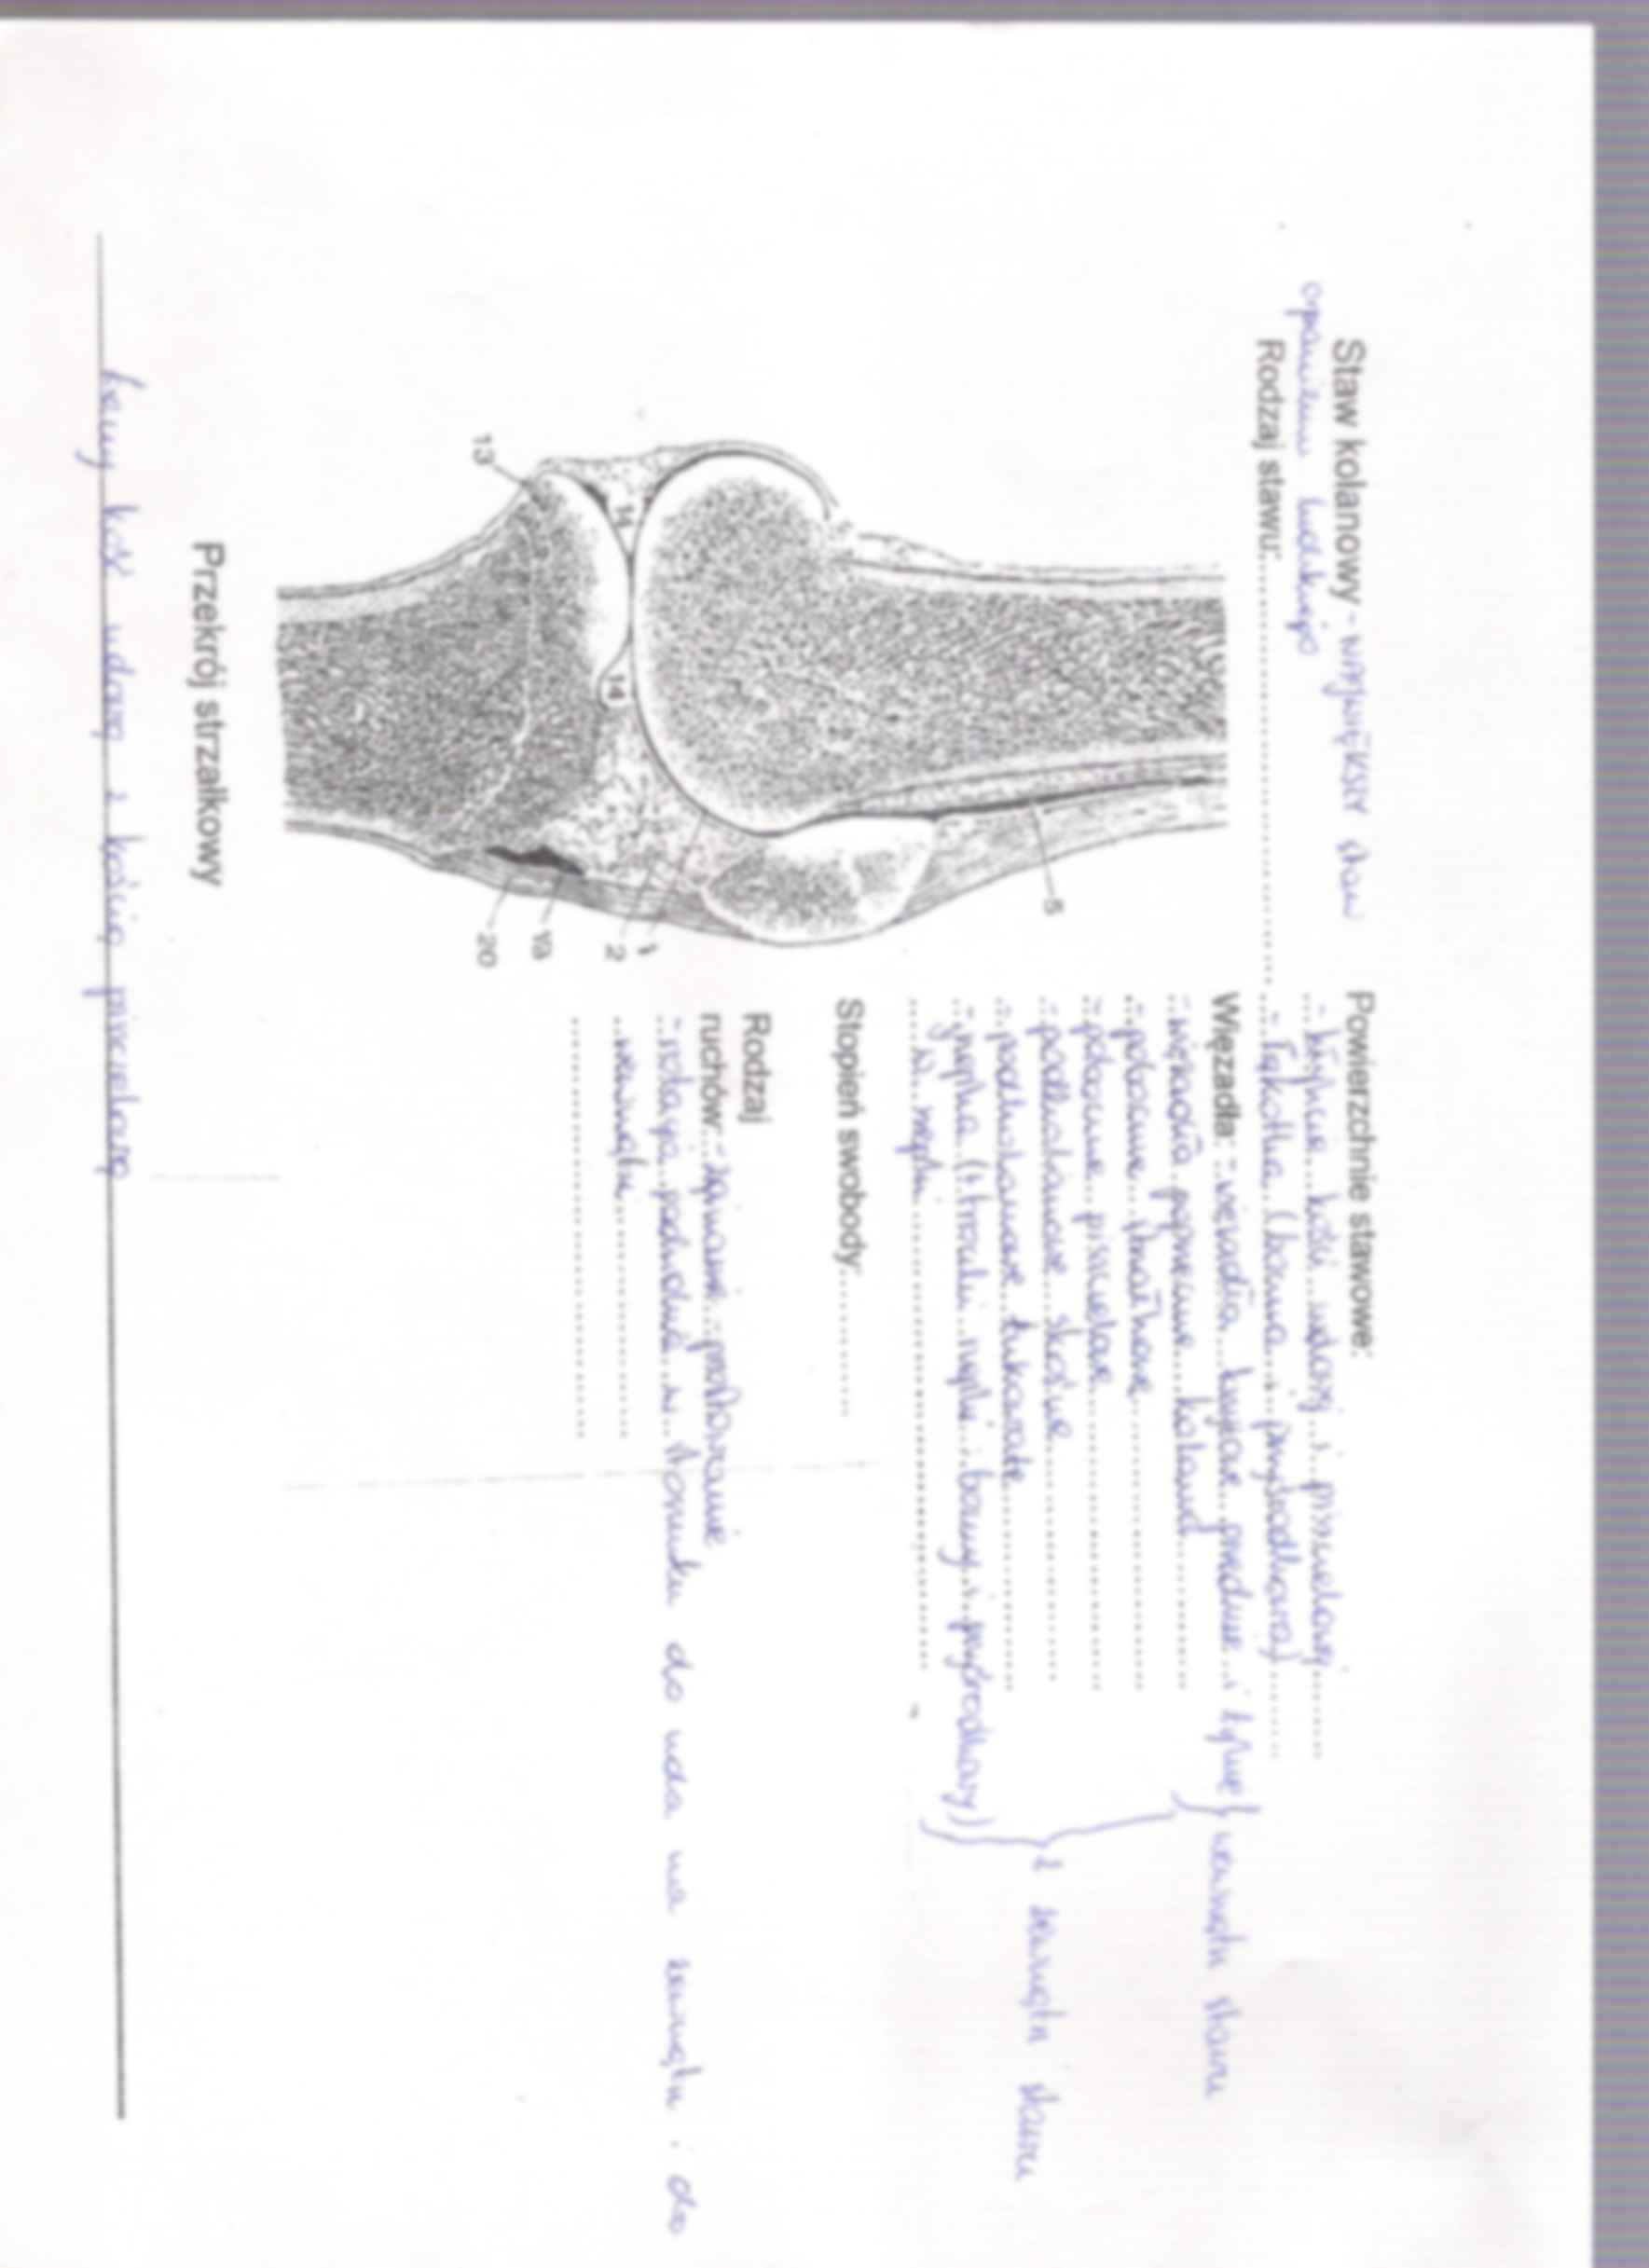 anatomia kończyna dolna stawy i mięśnie 2 - strona 2